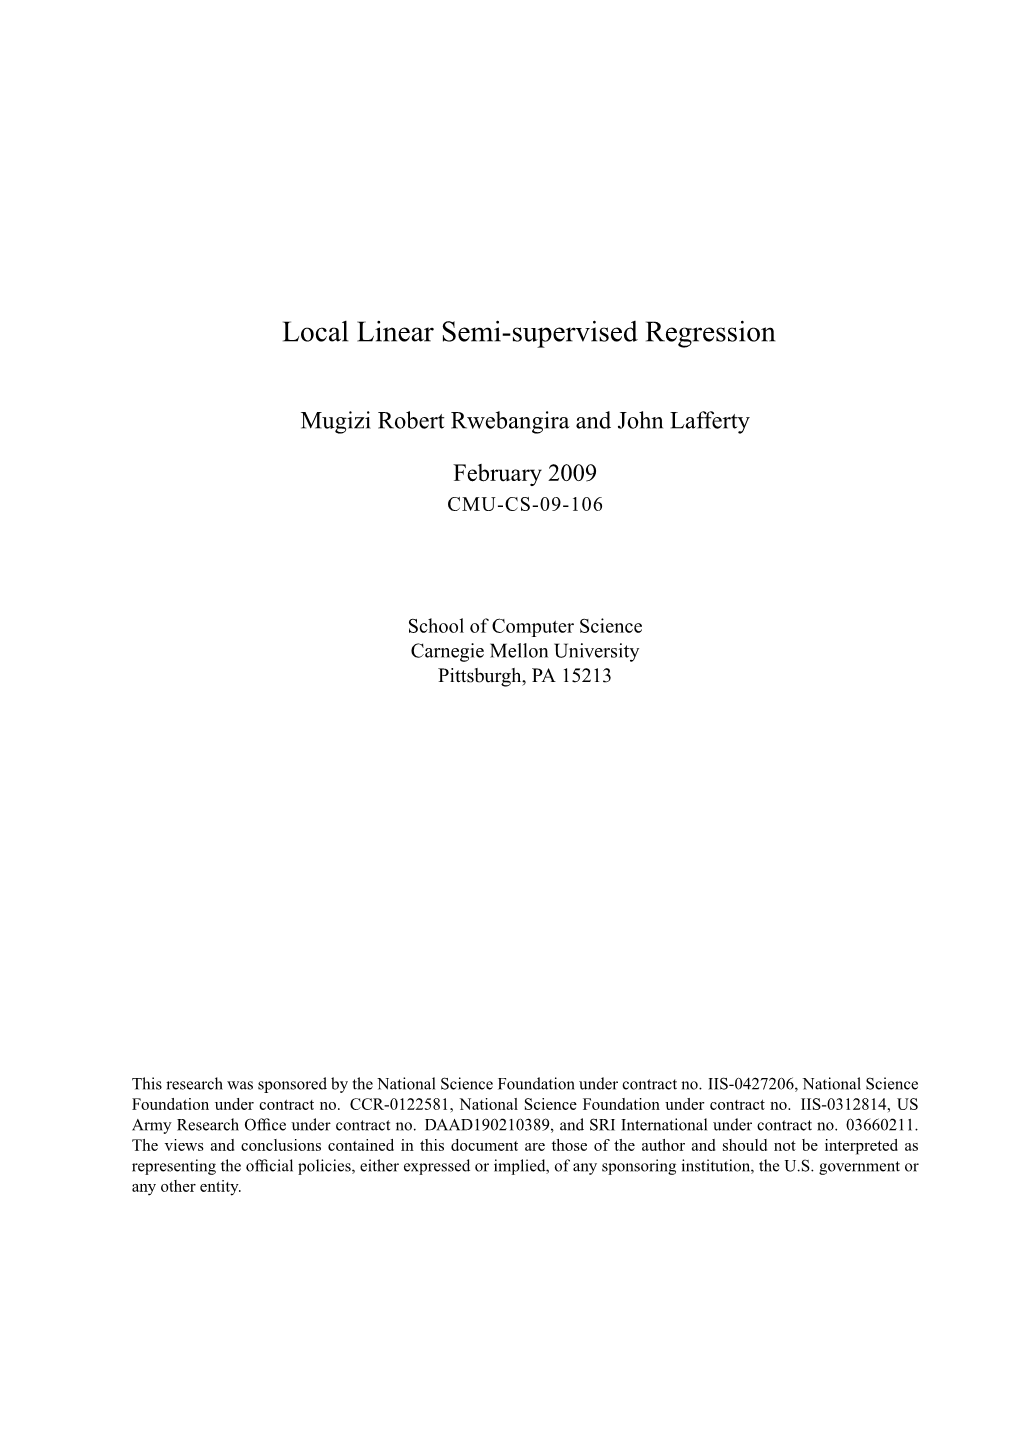 Local Linear Semi-Supervised Regression